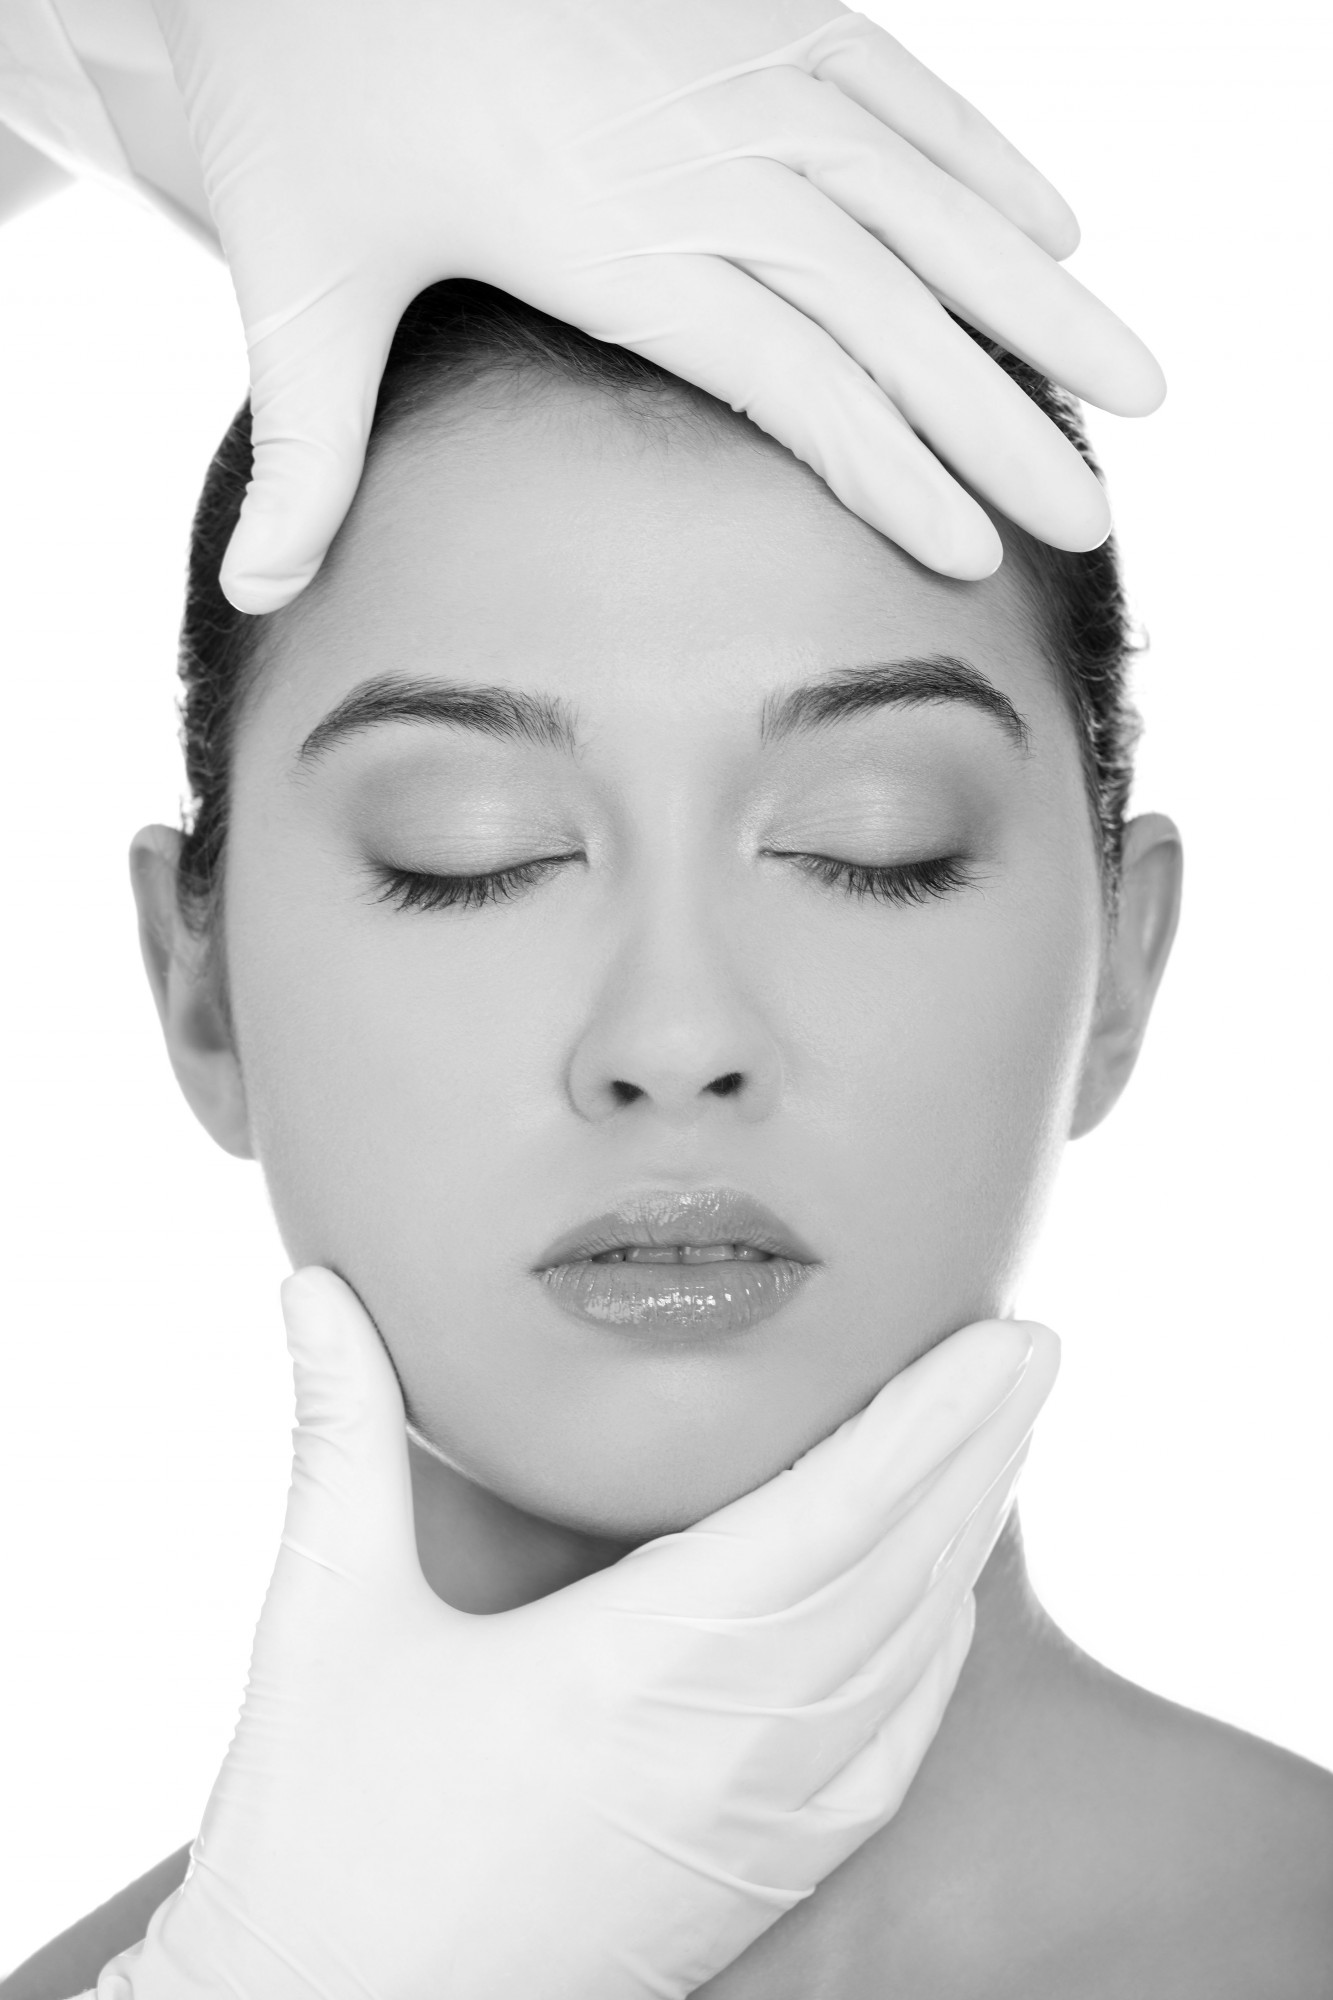 chirurgie rajeunissement visage lipofilling lyon lipostructure amelioration ovale du visage